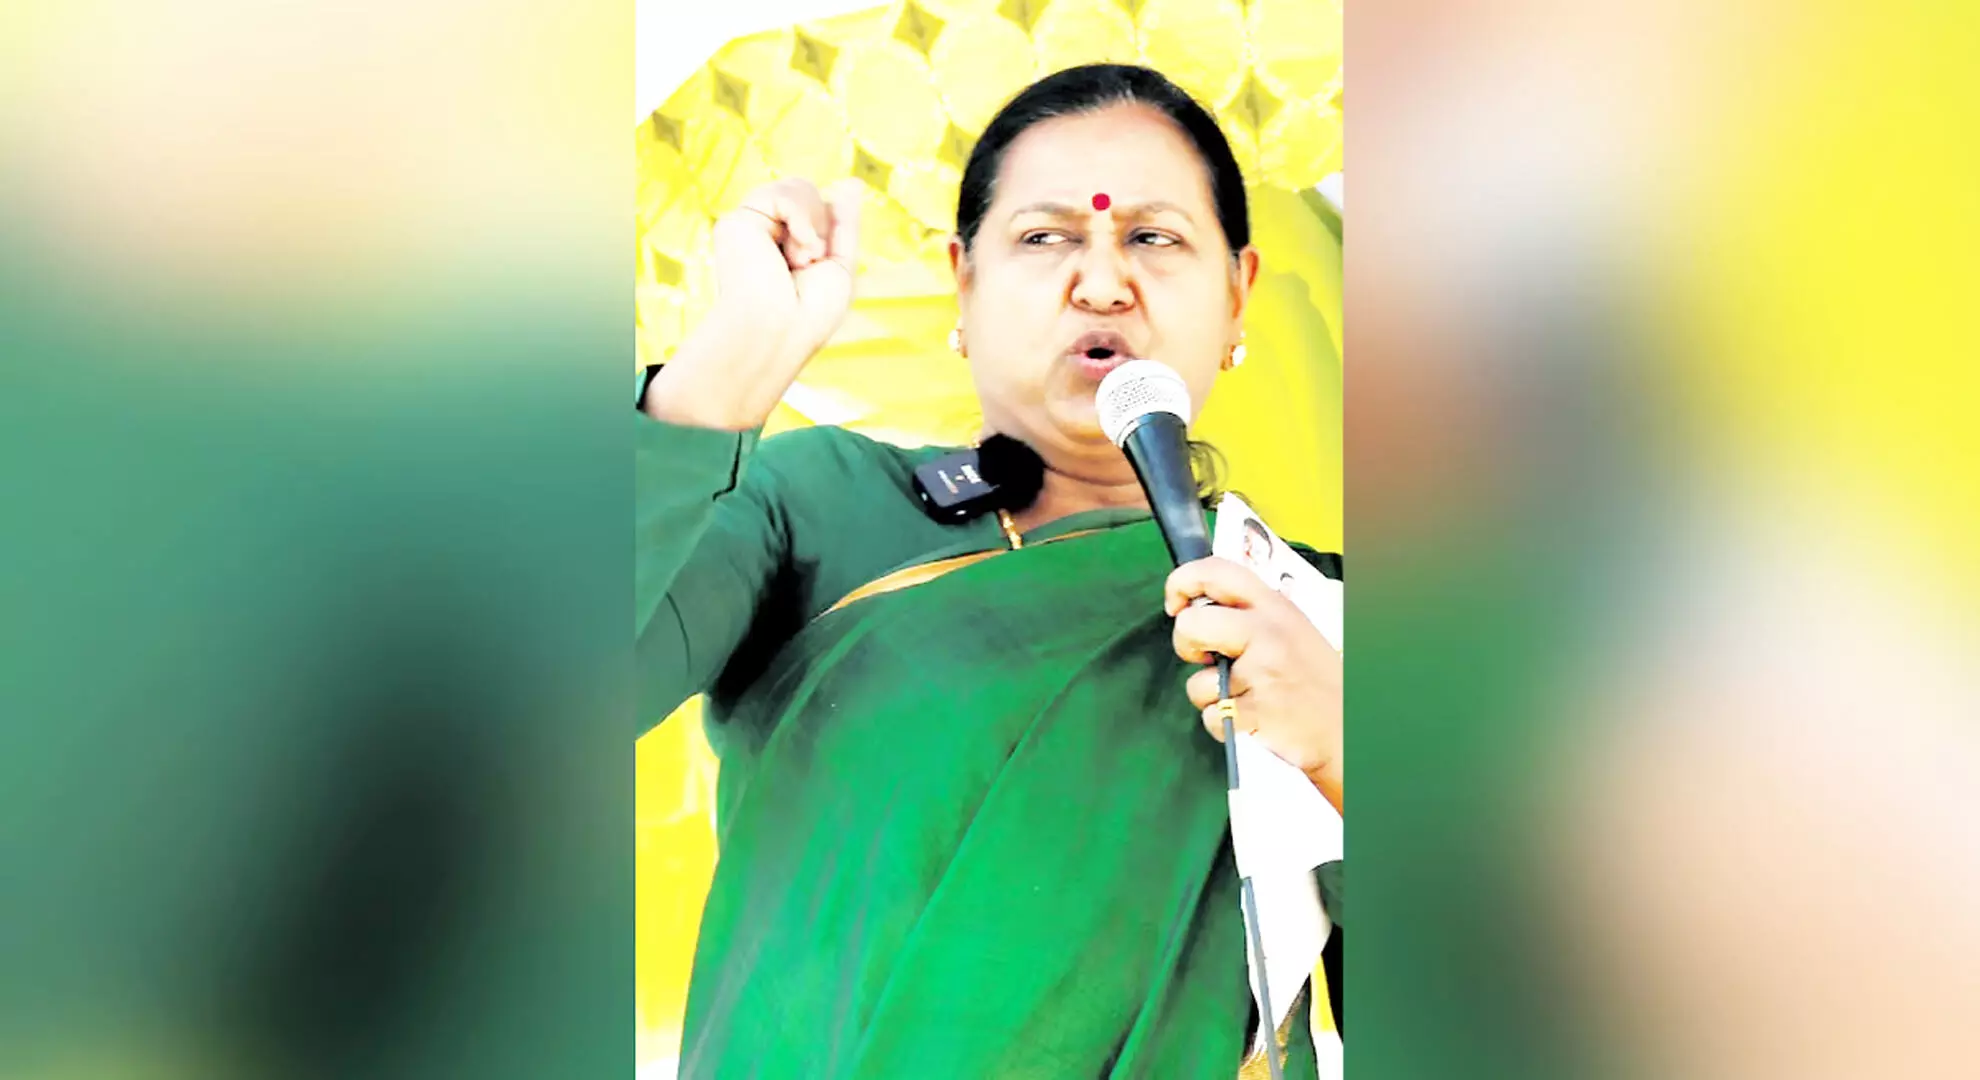 टैक्स और बिजली बिल में बढ़ोतरी से तमिलनाडु में हवा हमारे पक्ष में हो गई: डीएमडीके नेता प्रेमलता विजयकांत